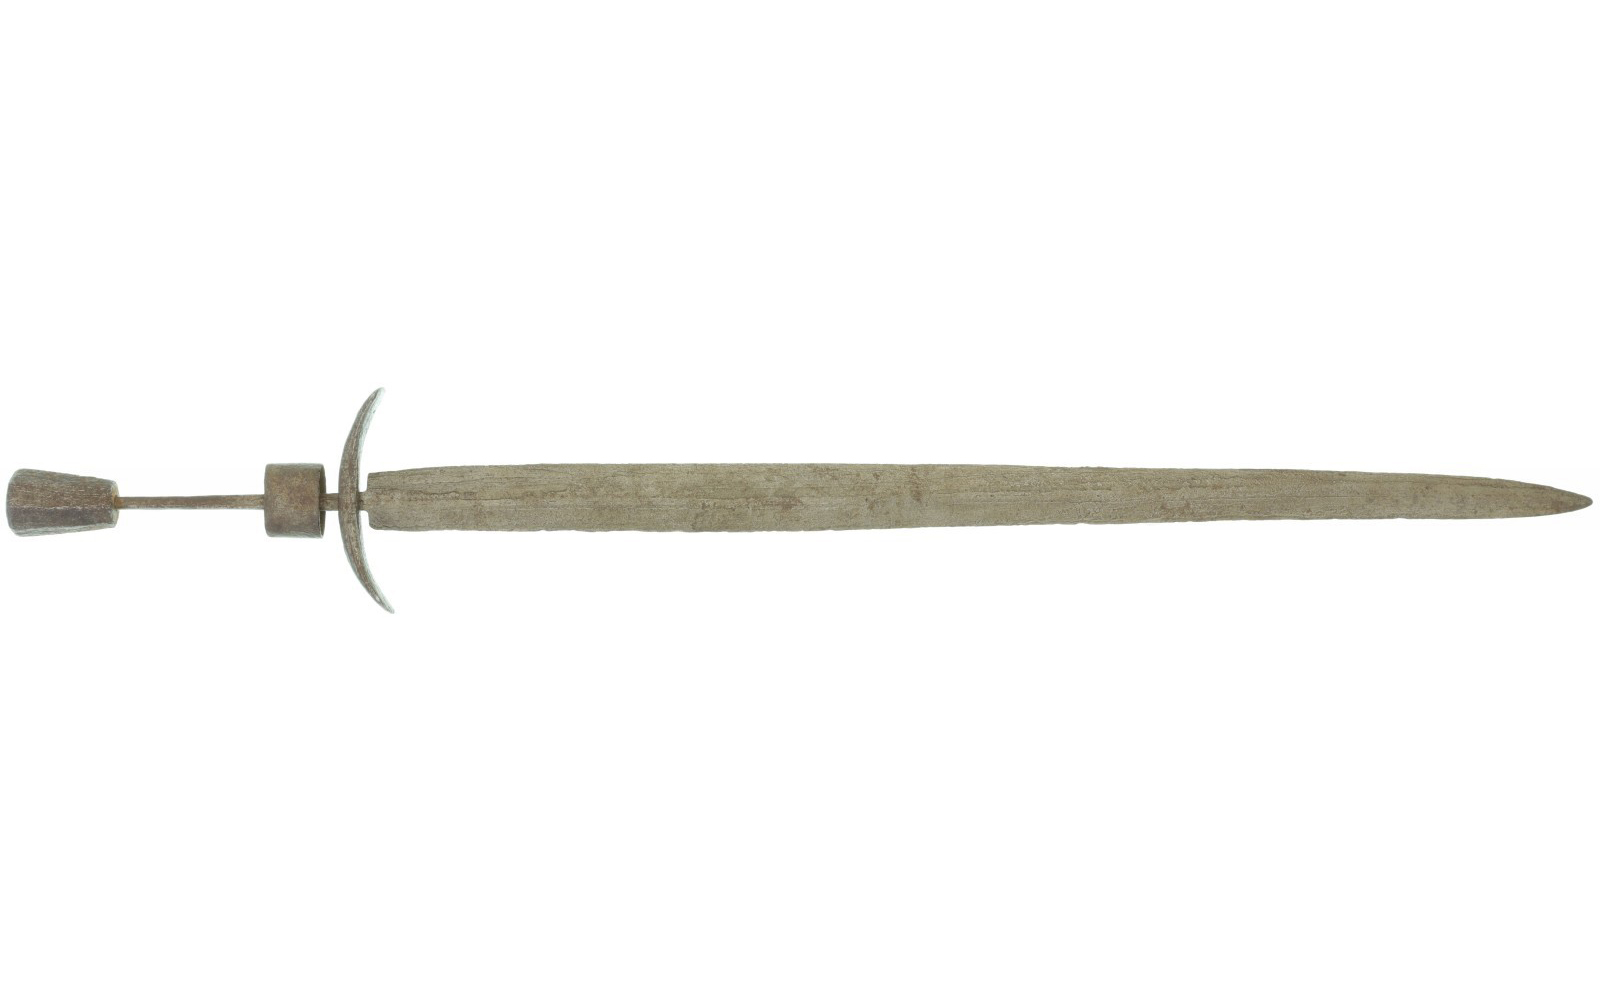 Mittelalterliches Kurzschwert, um 1250, restaurierter Wasserfund